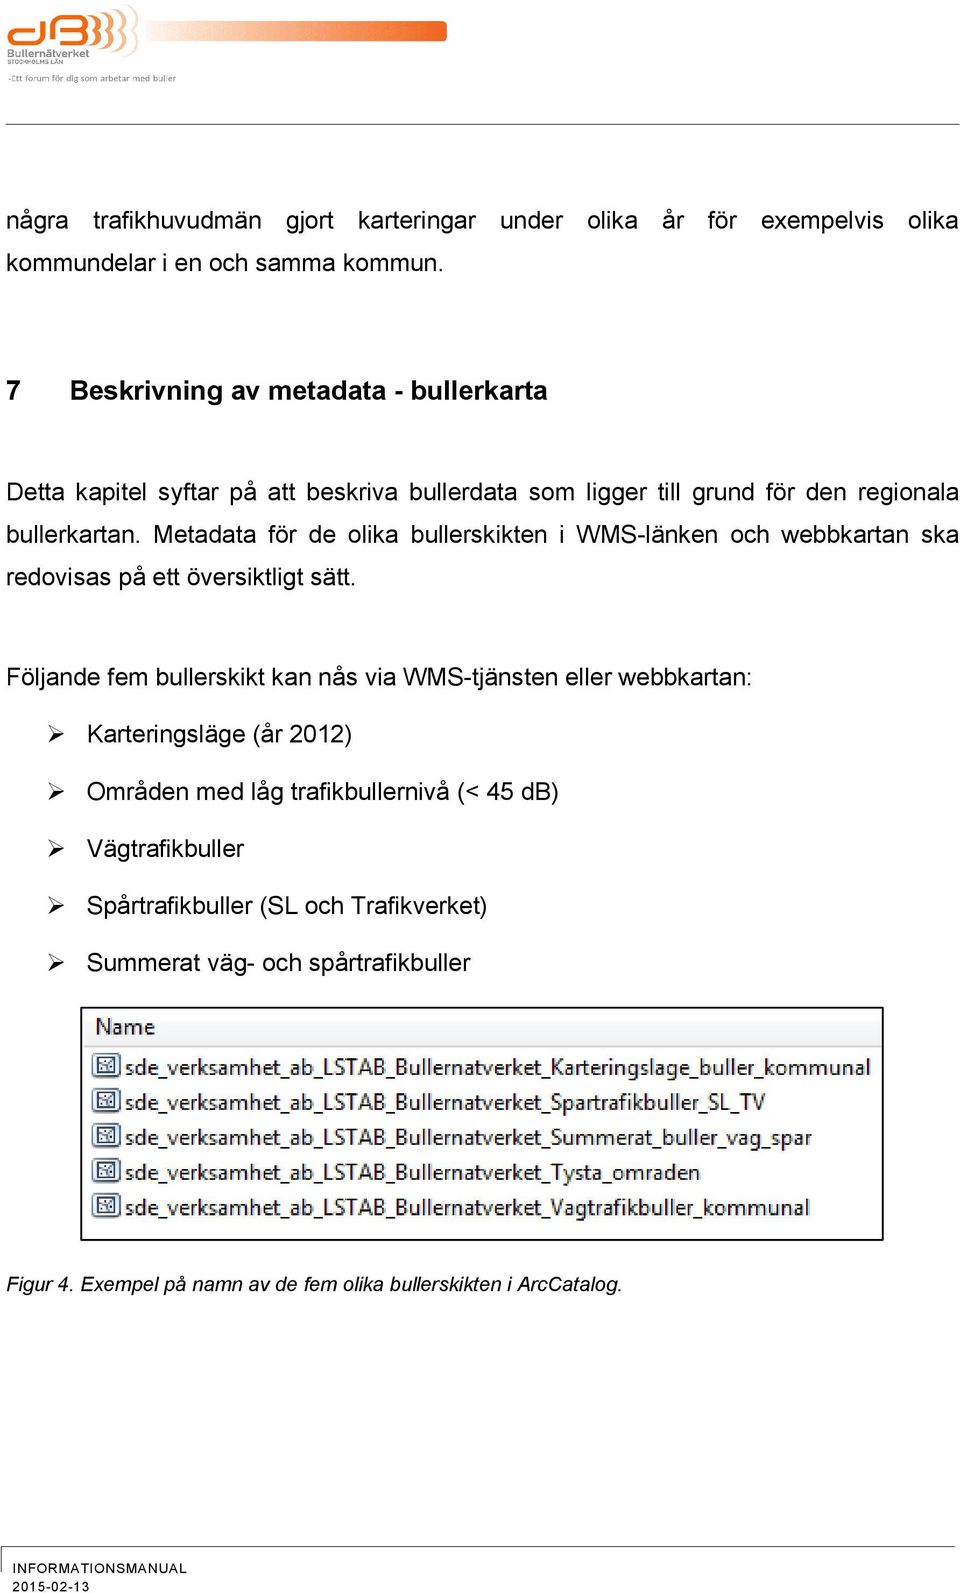 Metadata för de olika bullerskikten i WMSlänken och webbkartan ska redovisas på ett översiktligt sätt.